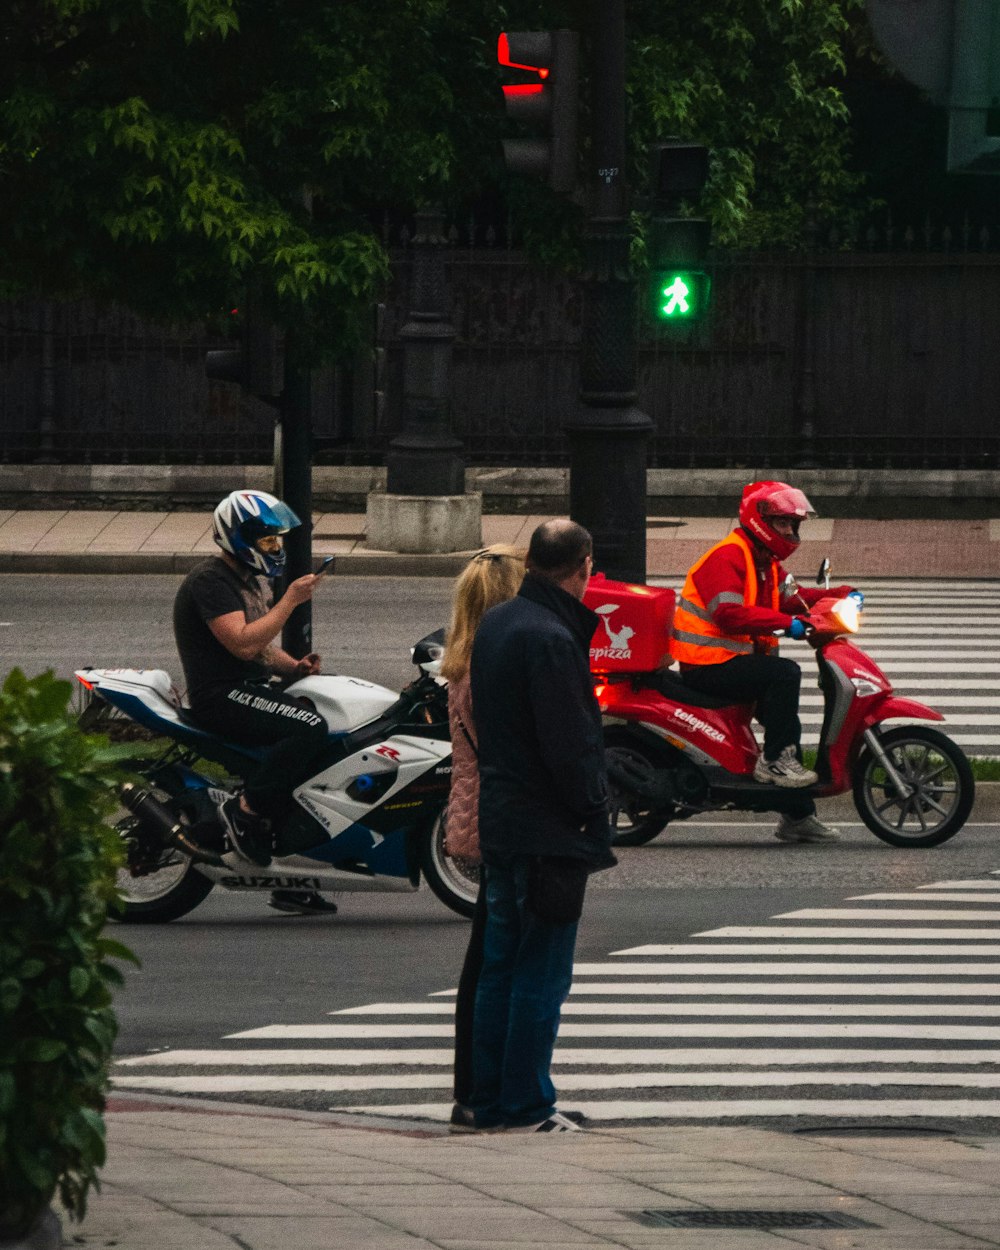 personnes circulant à moto sur la route pendant la journée